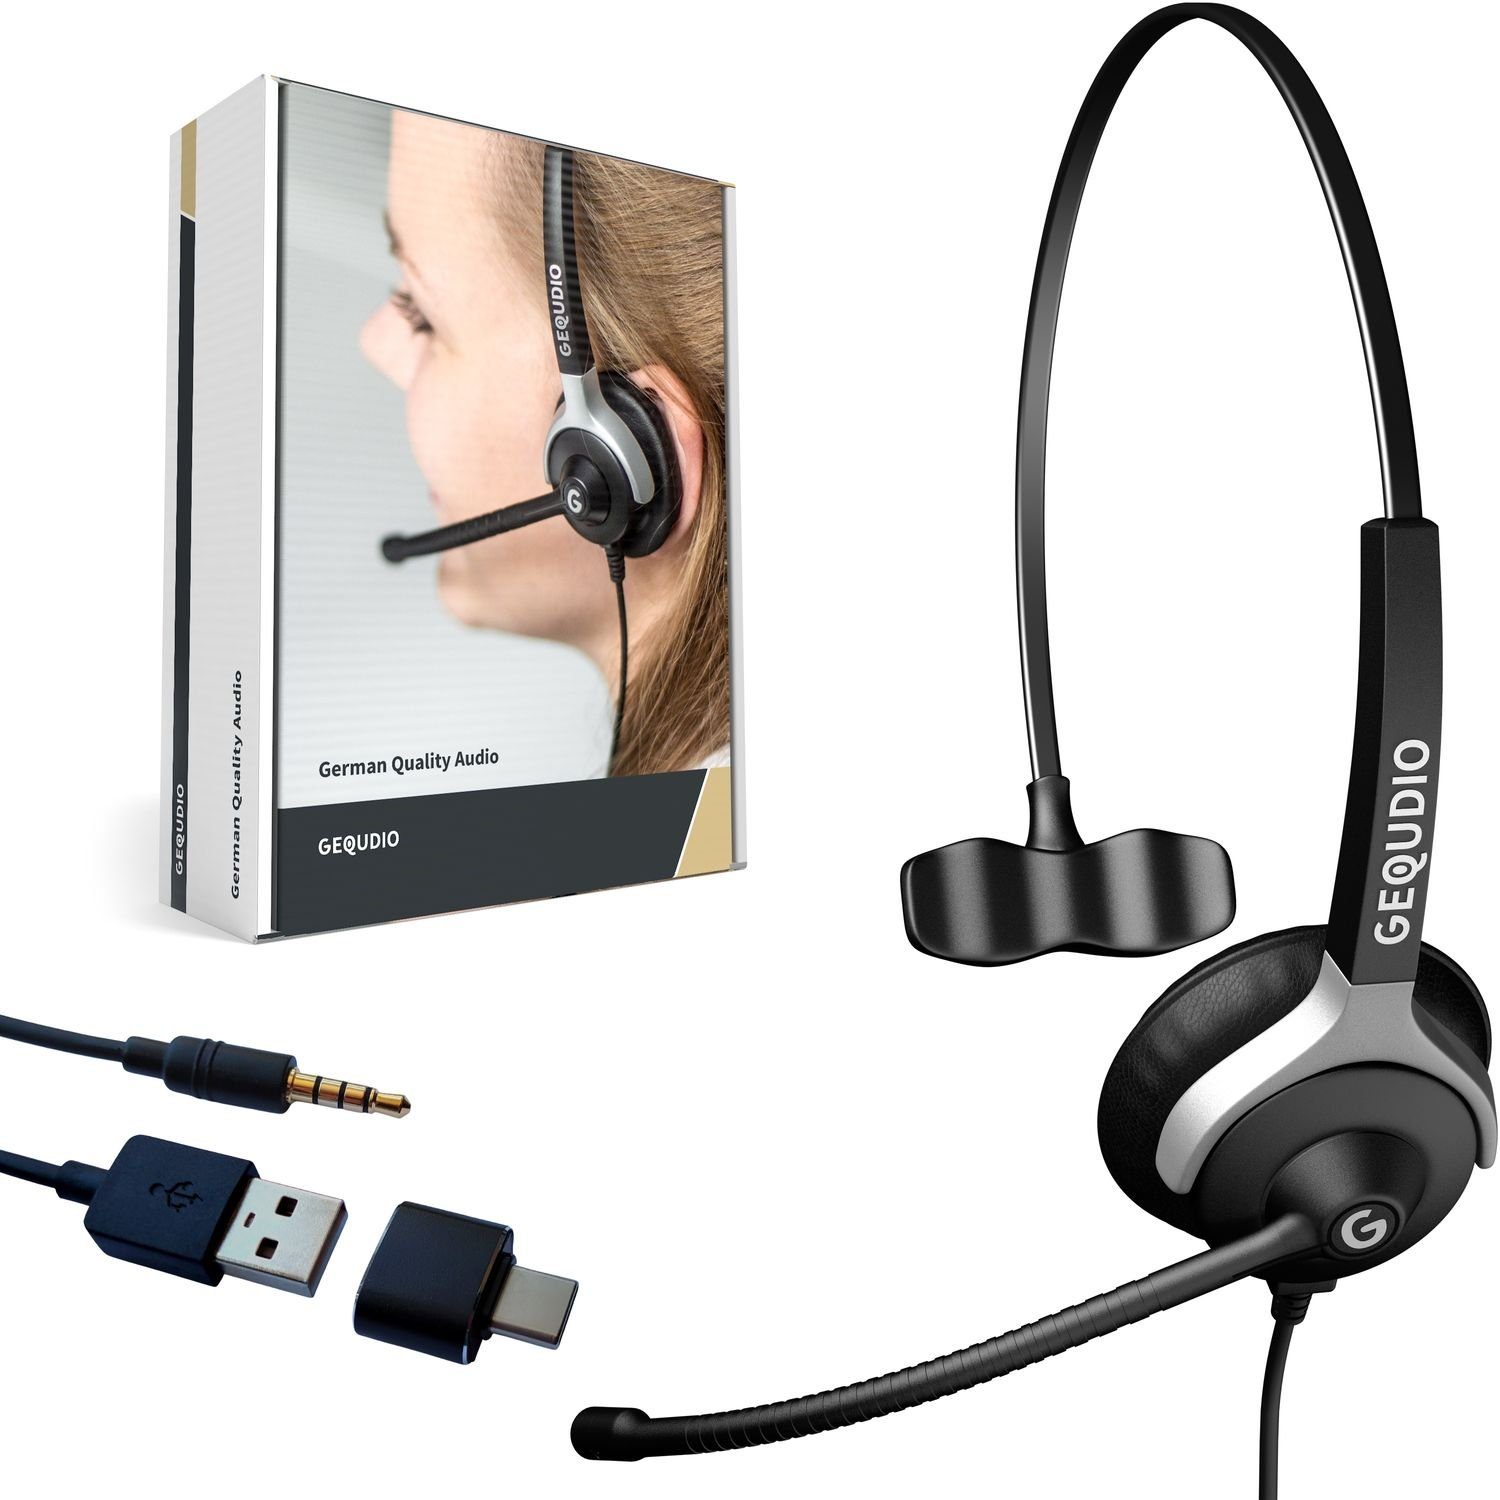 GEQUDIO Headset (1-Ohr-Headset mit USB-A, USB-C Adapter und 3,5mm Klinke  für PC, Mac und Smartphone / mit Kabel, Breitband-Lautsprecher, isolierende  Ohrpolster, Störunterdrückung / Designed in Germany)